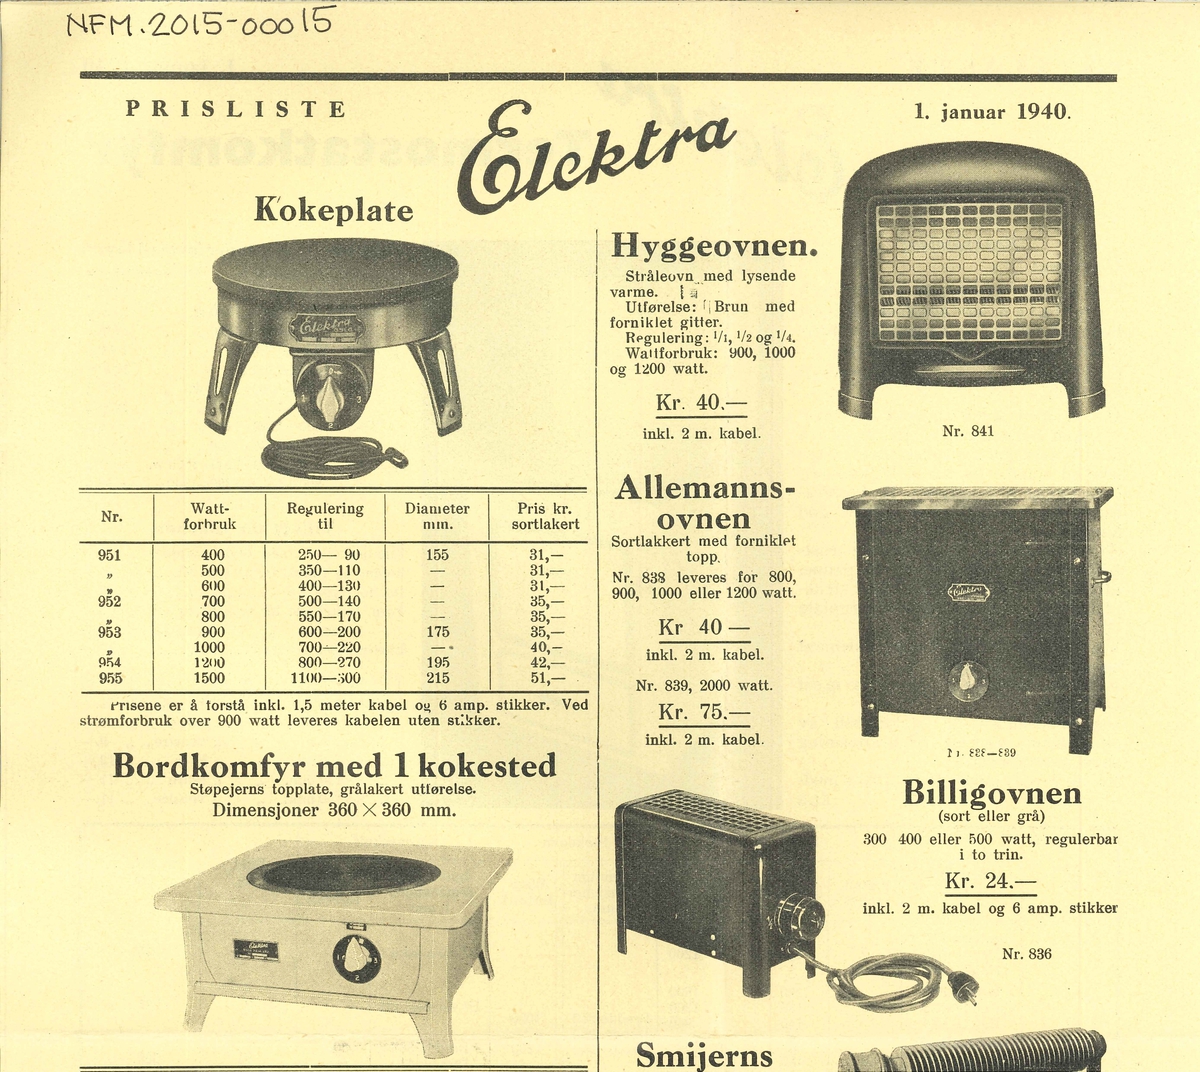 Eit smanbretta ark. Prisliste og produktskildring over Elektra produkt som kokeplate, varmeomn, bordkomfyr og komfyr. Datert 1.januar 1940.
Ei side med trykk på begge sider.